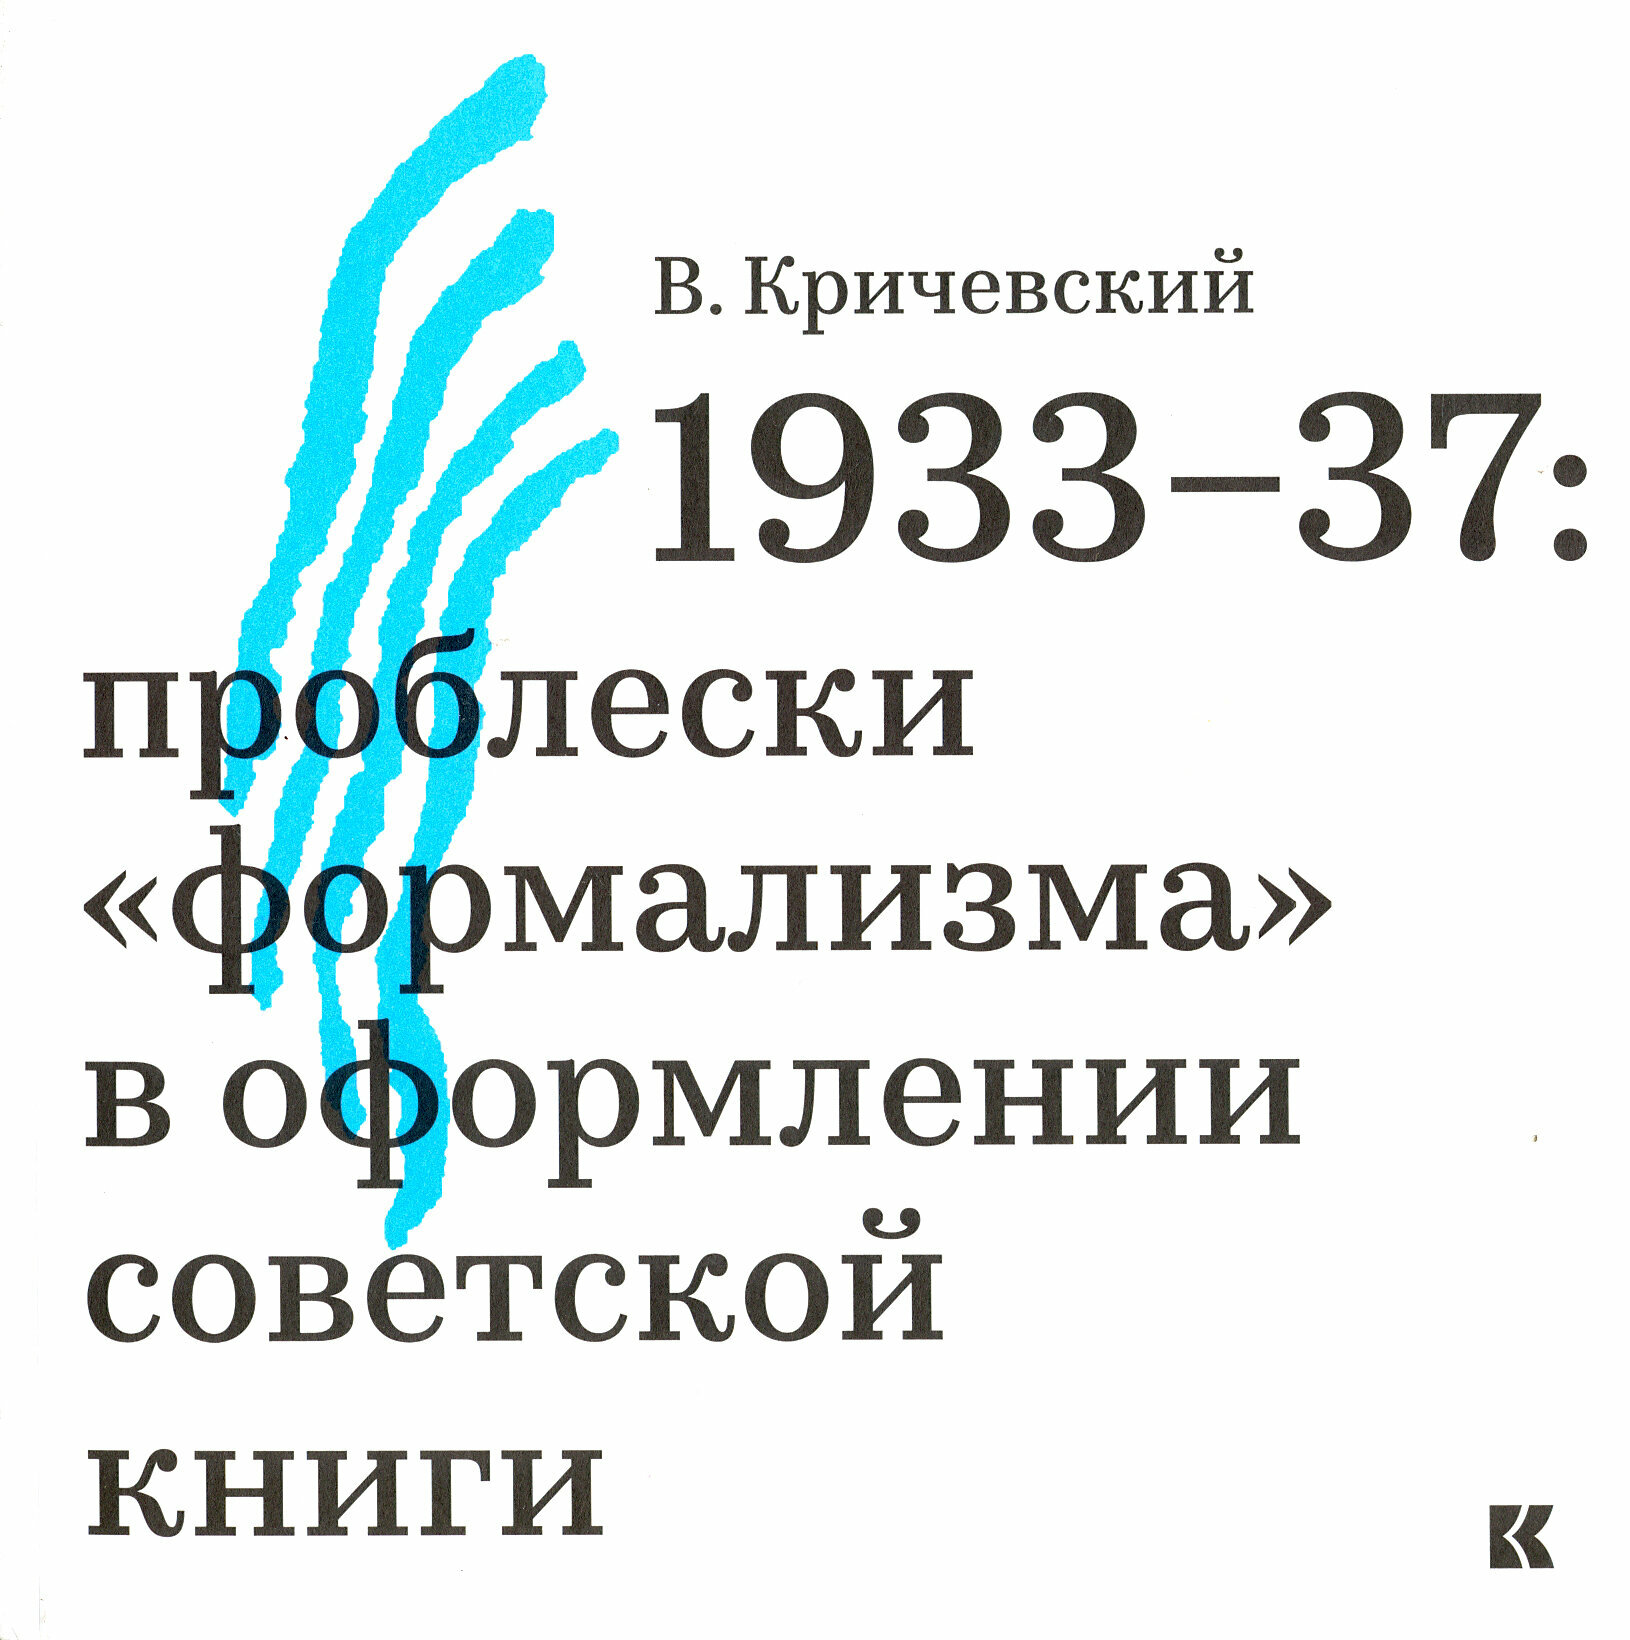 1933-37. Проблески "формализма" в оформлении советской книги - фото №1